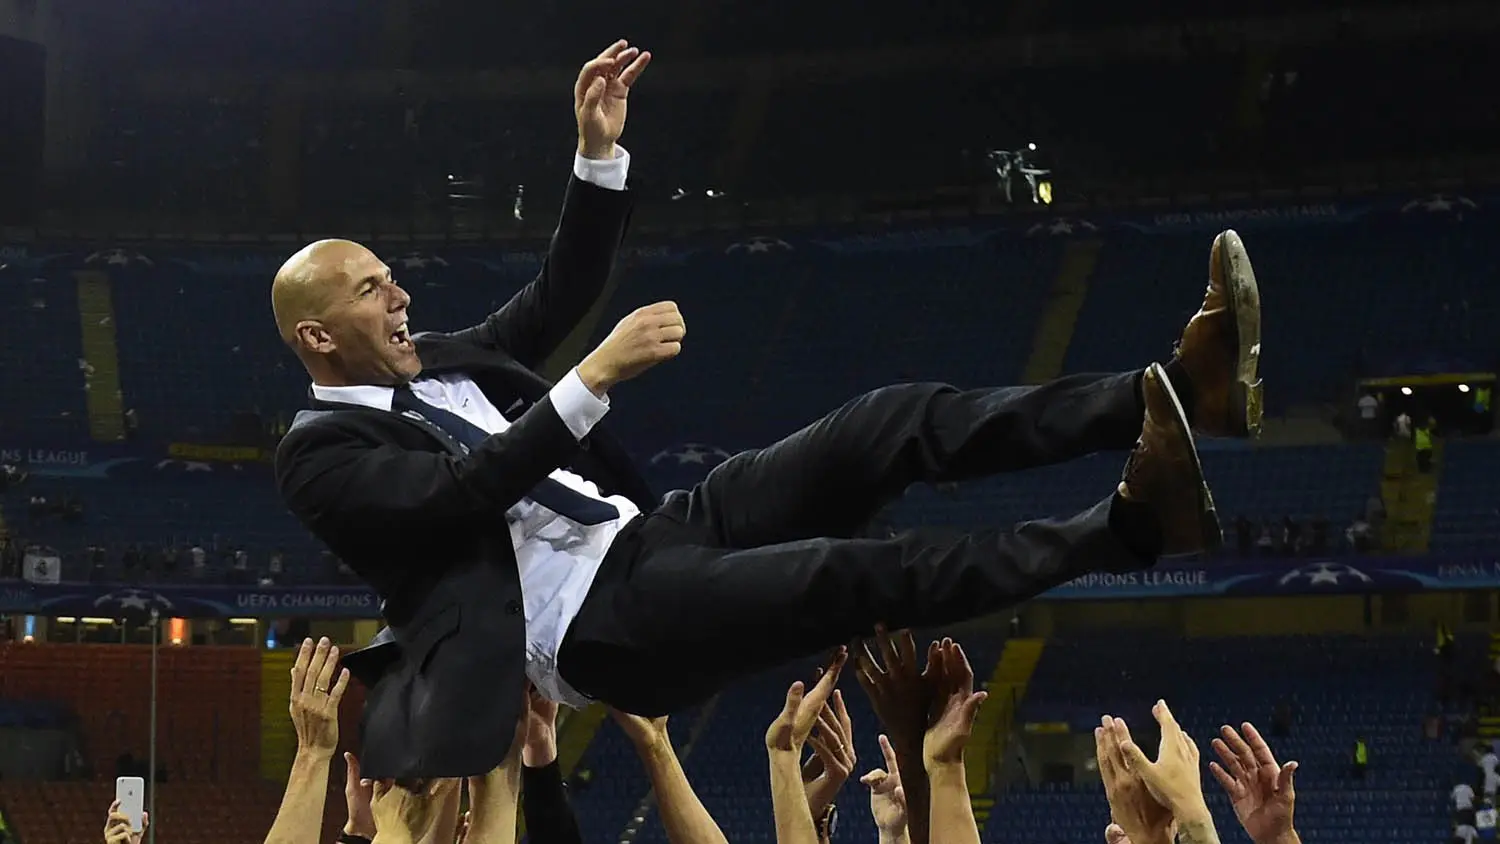 Pelatih Real Madrid, Zinedine Zidane, diangkat oleh anak asuhnya usai meraih gelar Liga Champions di Stadion San Siro, Milan, Sabtu (28/5/2016). (AFP/Pierre-Philippe Marcou)